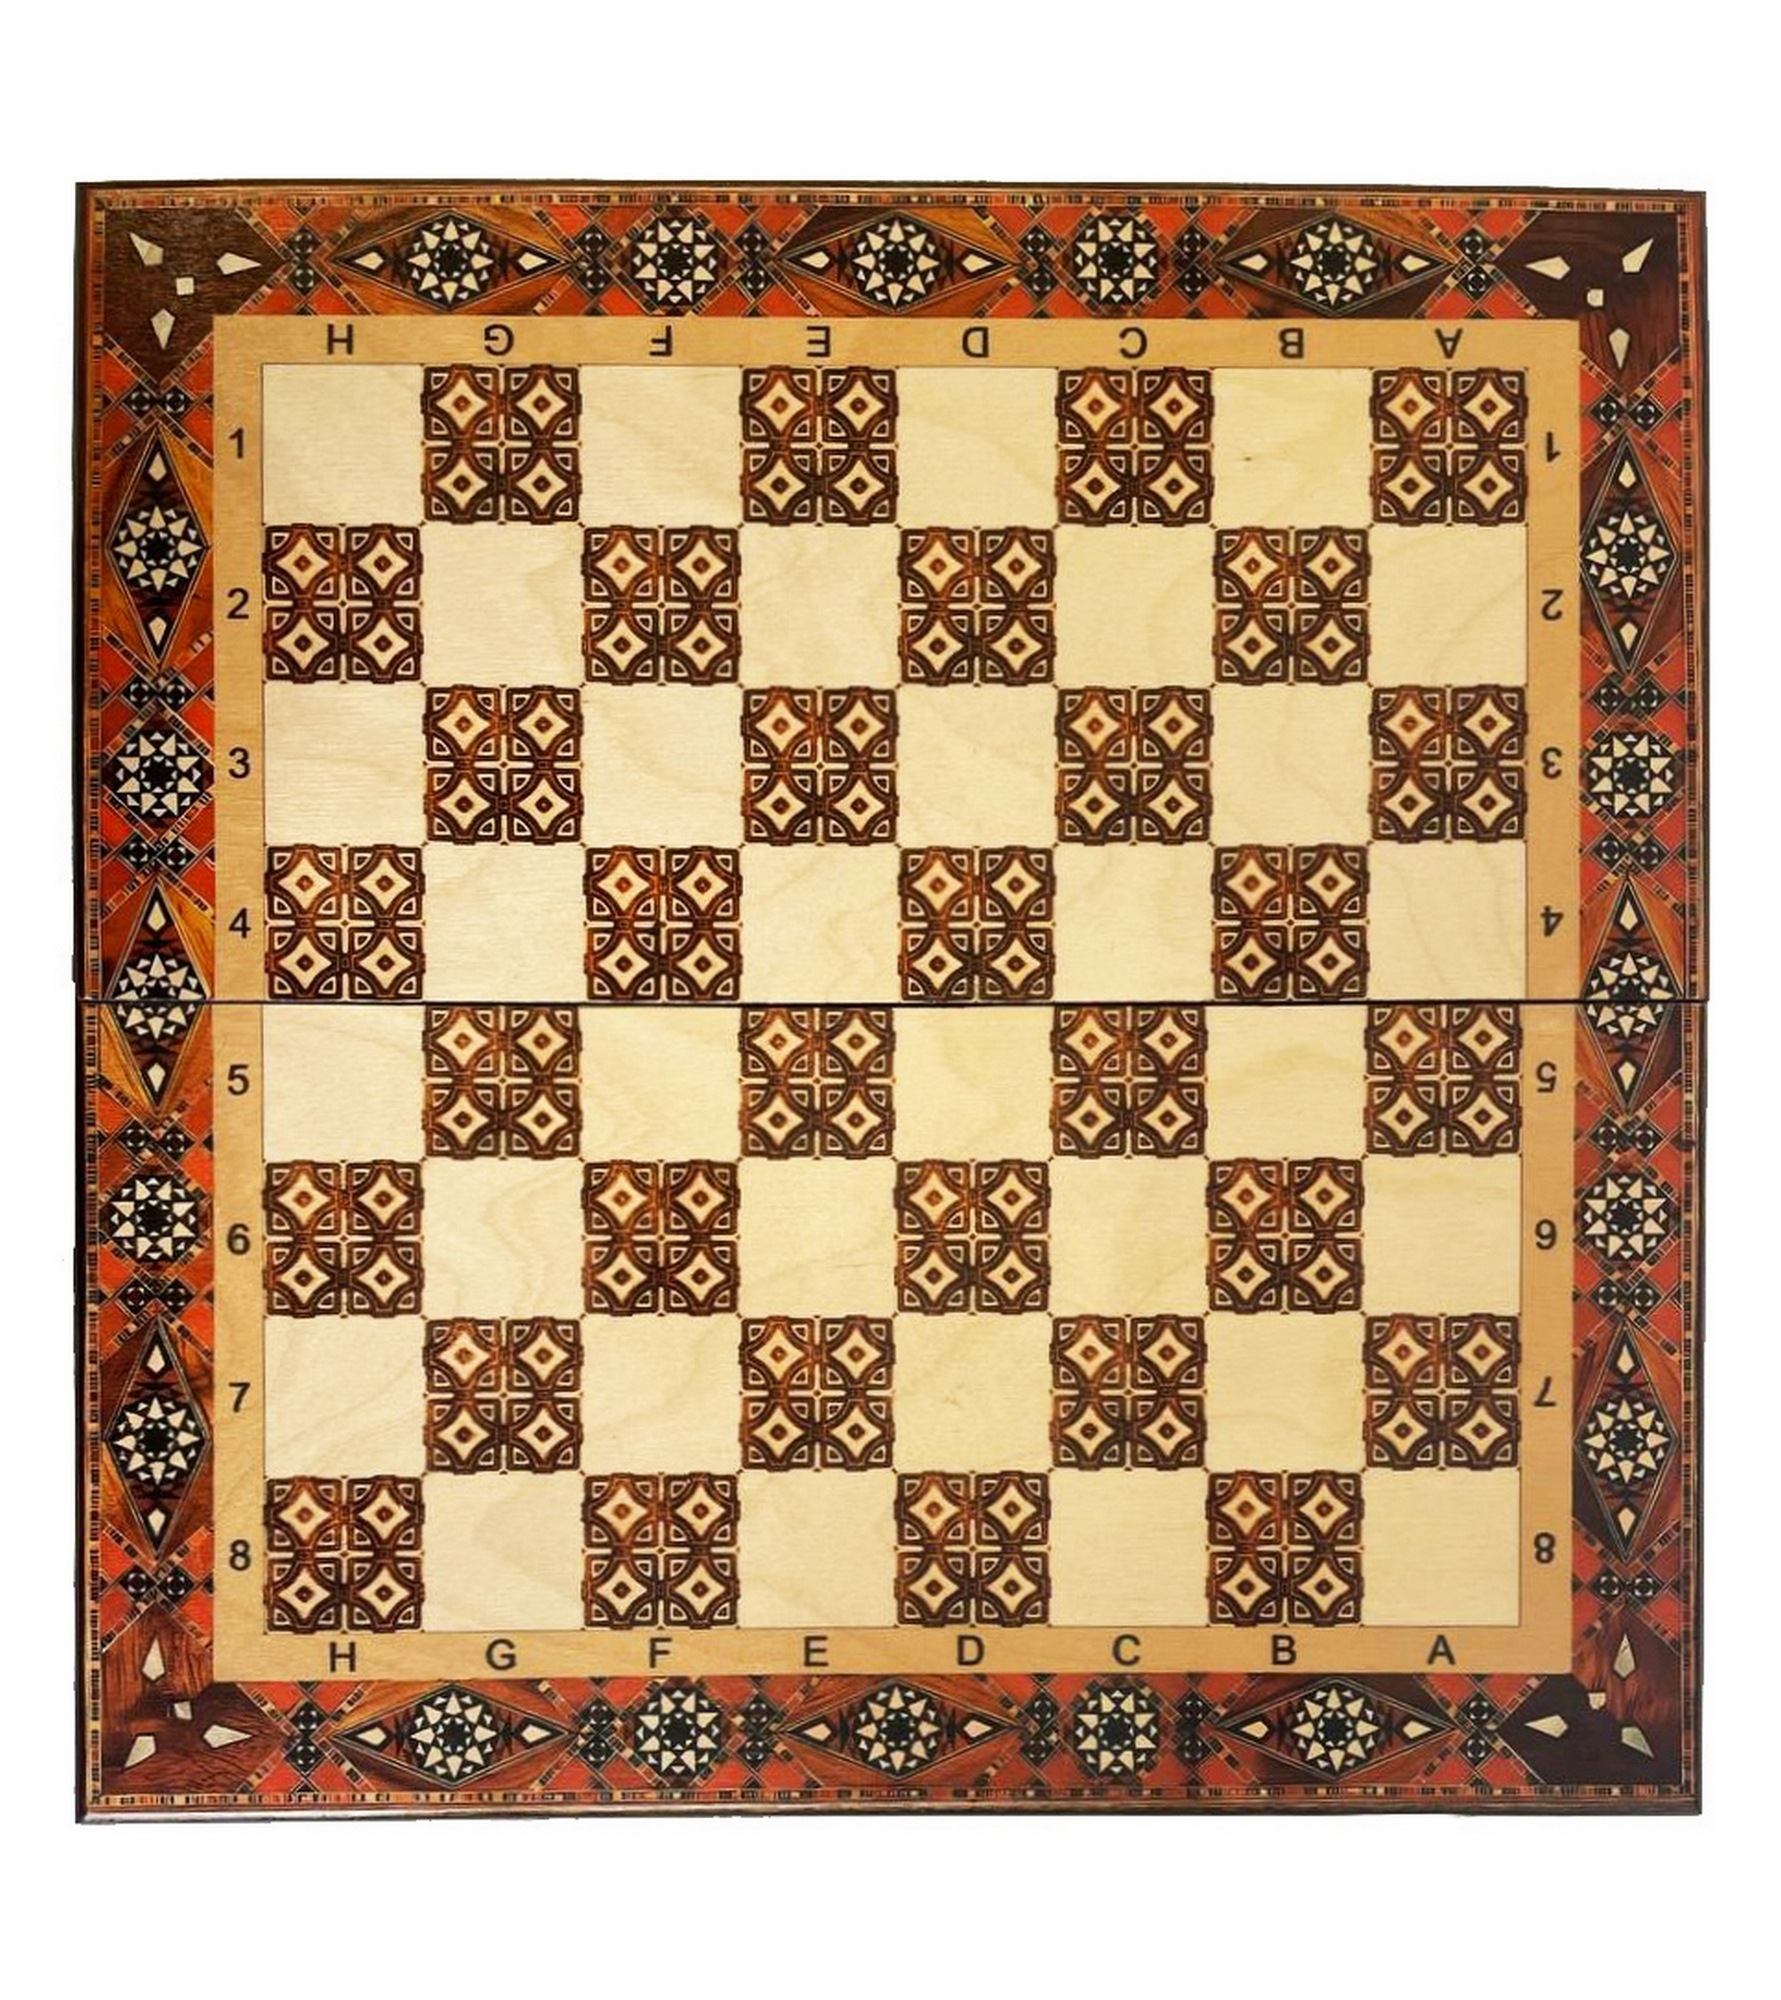 Шахматы "Византия 1" 30 Armenakyan AA102-31 1781_2000